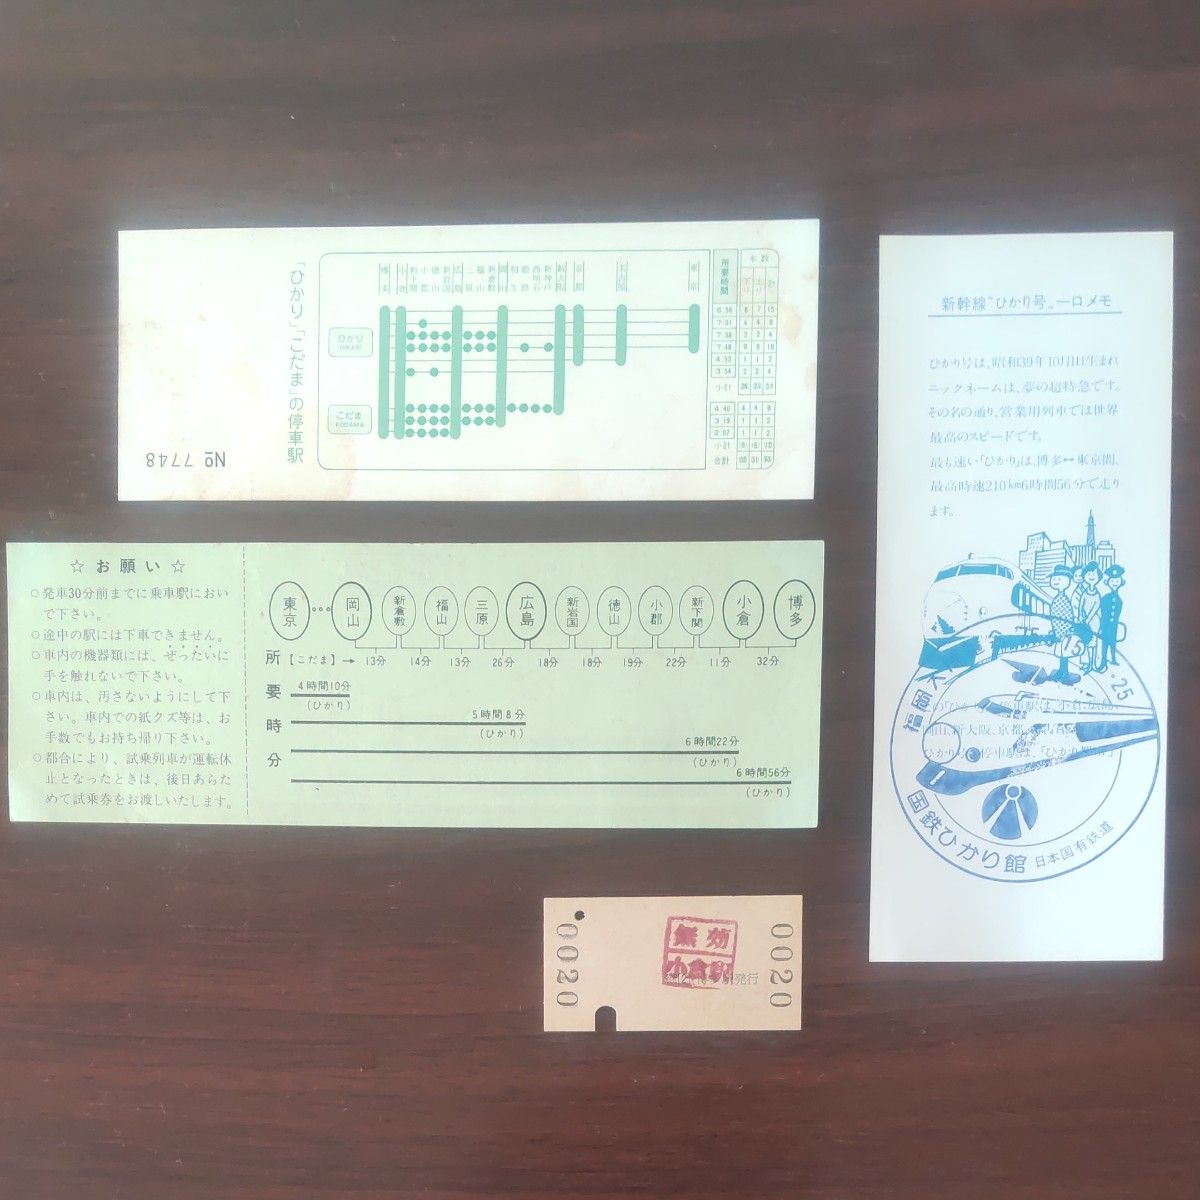 国鉄、山陽新幹線、開業日付3月10日の特急券(無効印あり)、記念特急券、試乗券ほか合計4枚。